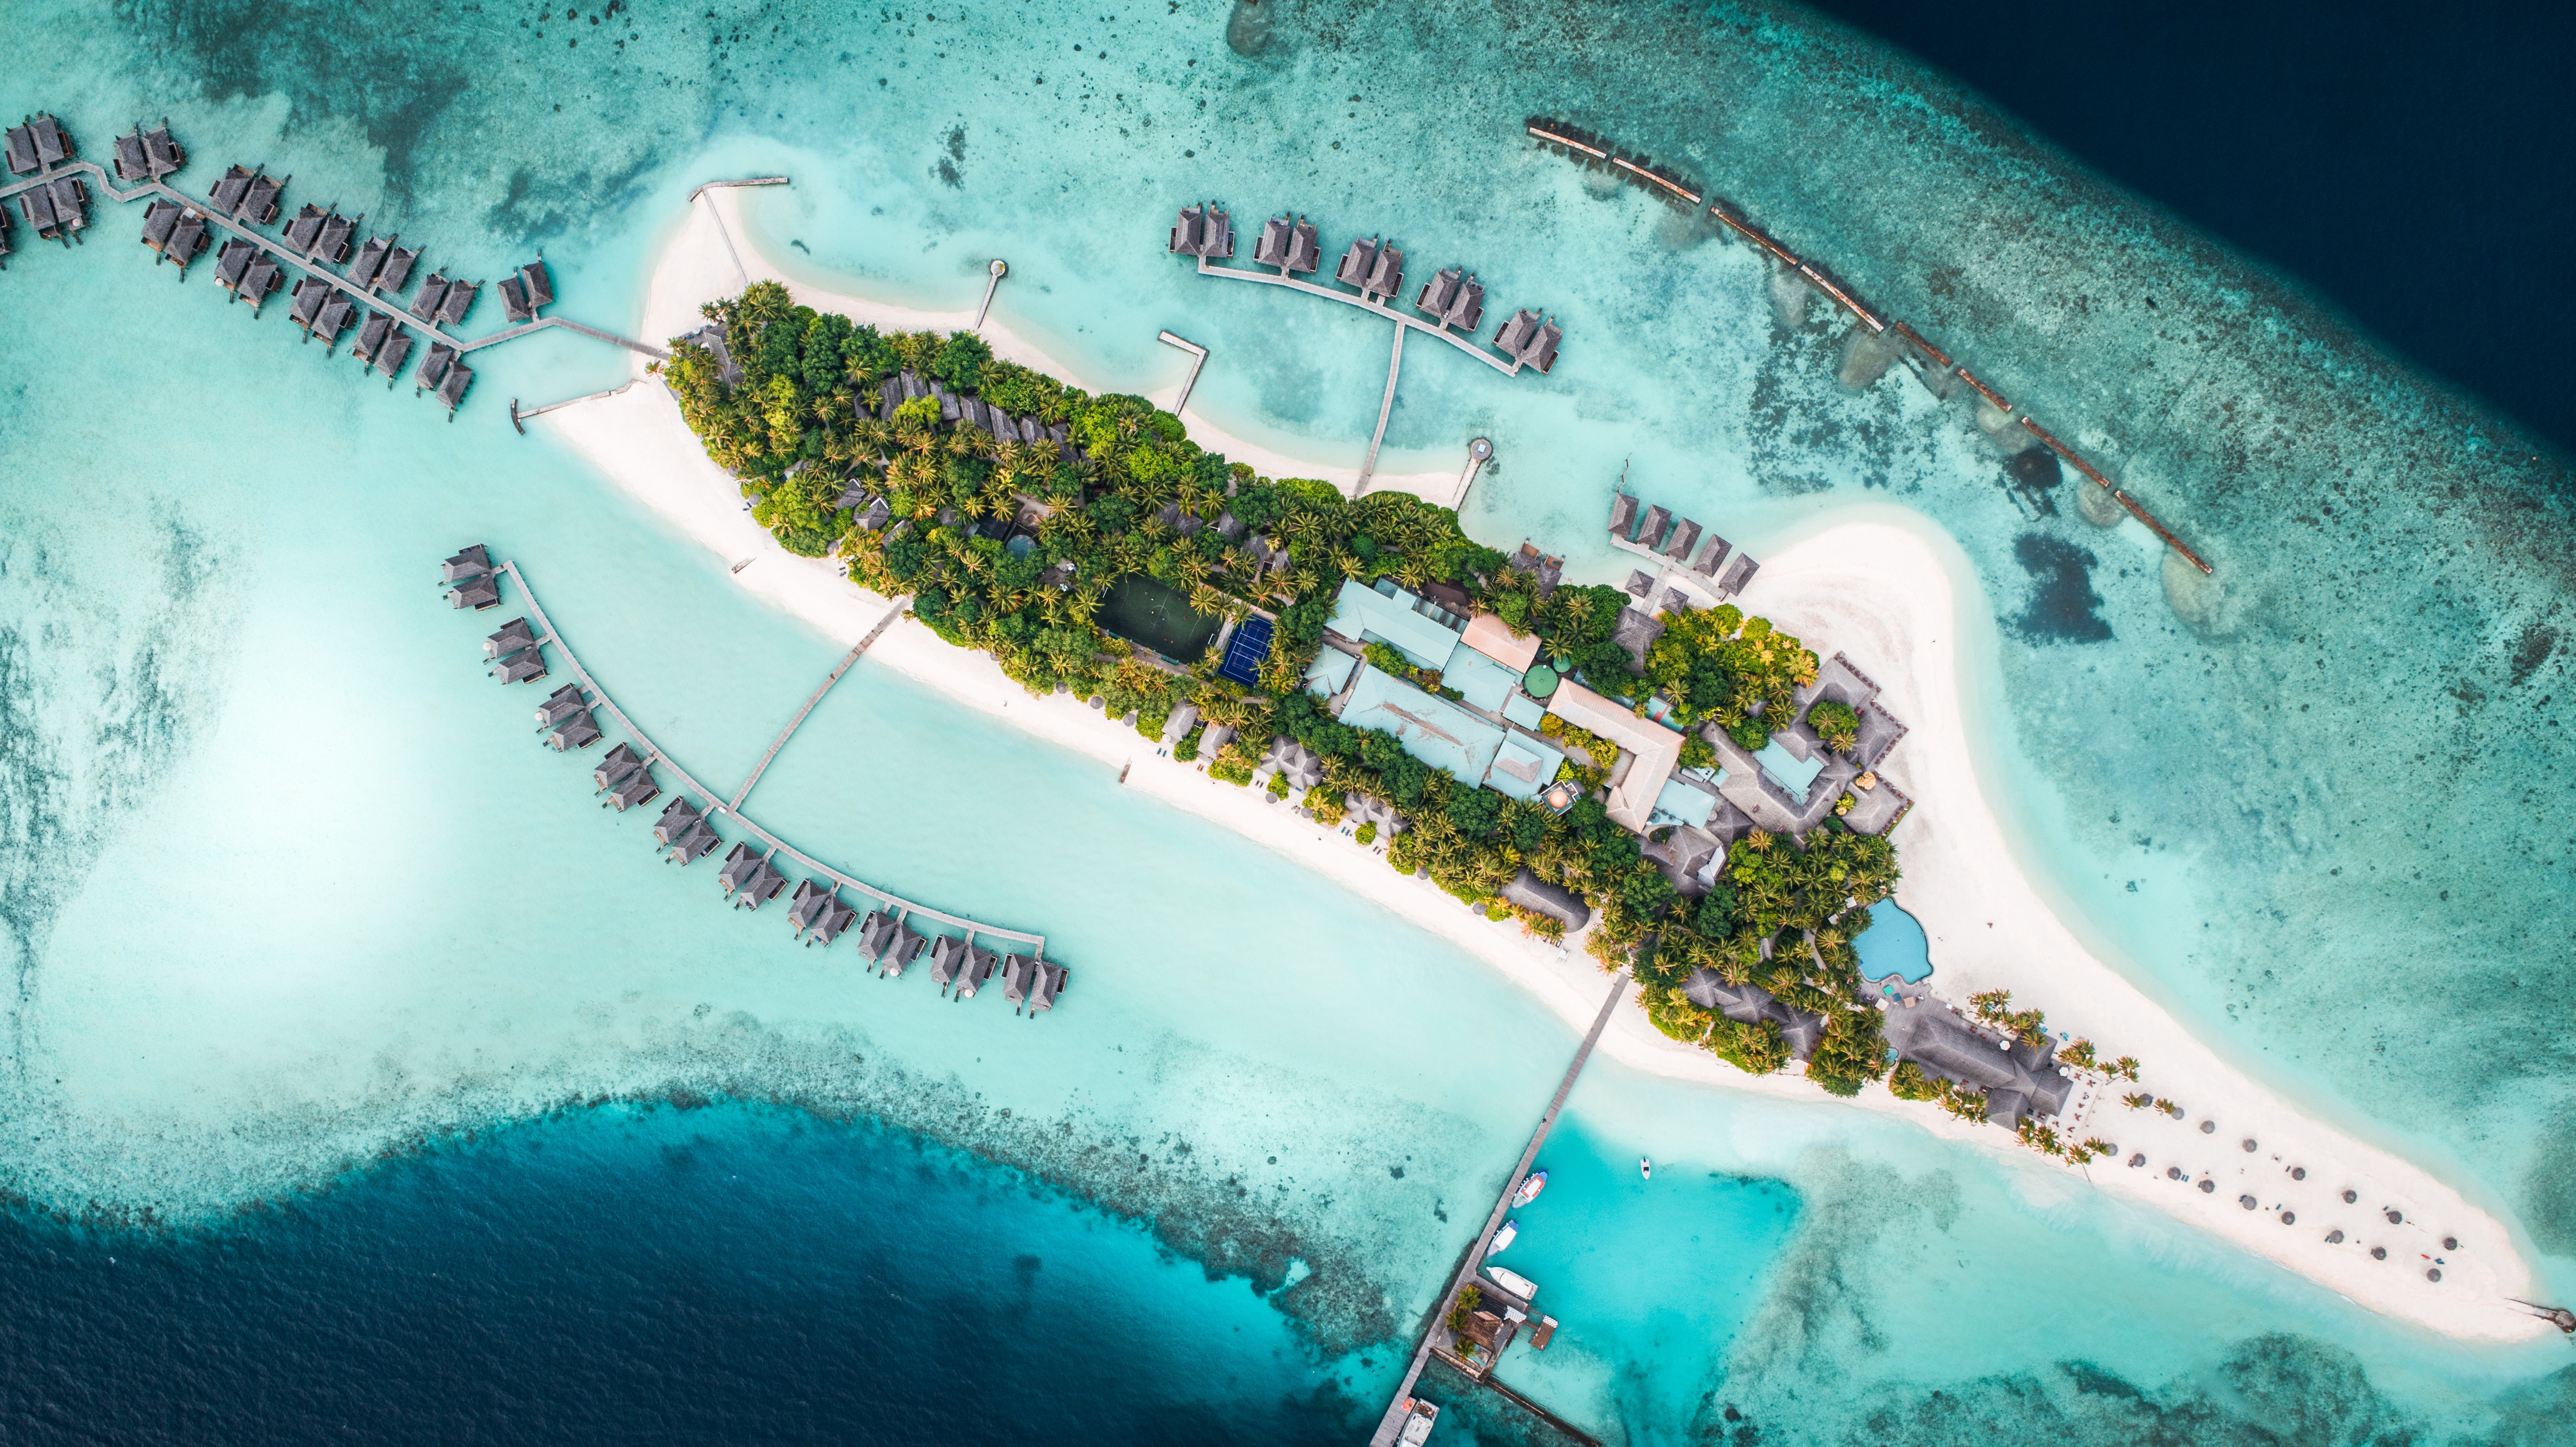 Island resort spa мальдивы. Остров Куреду Мальдивы. Мальдивы остров Сан Исланд. Остров Велиганду Мальдивы. Атолл Расду Мальдивы.